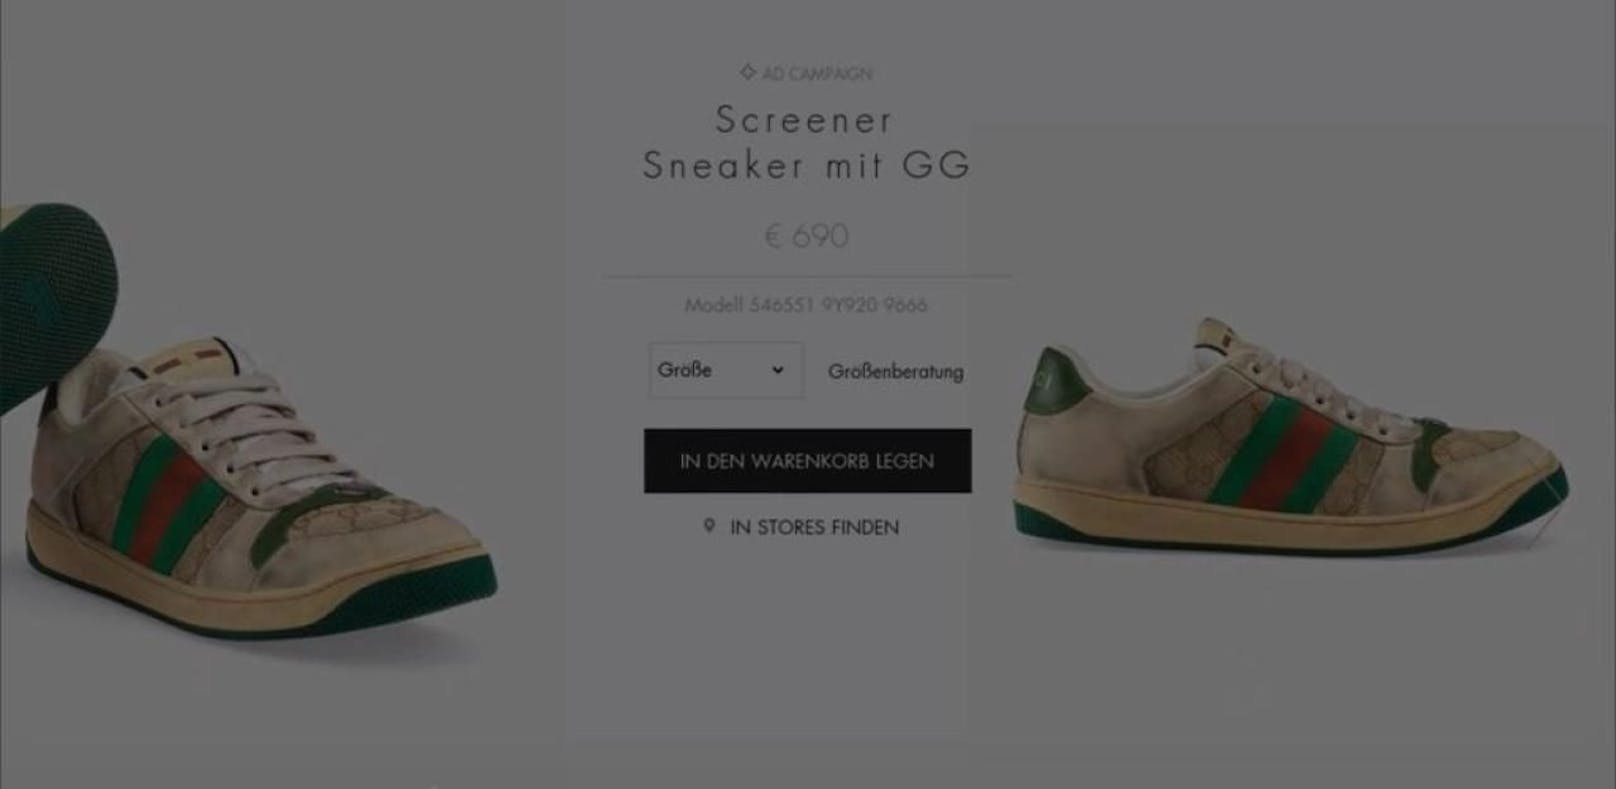 Diese dreckigen Gucci-Sneaker kosten fast 700 €